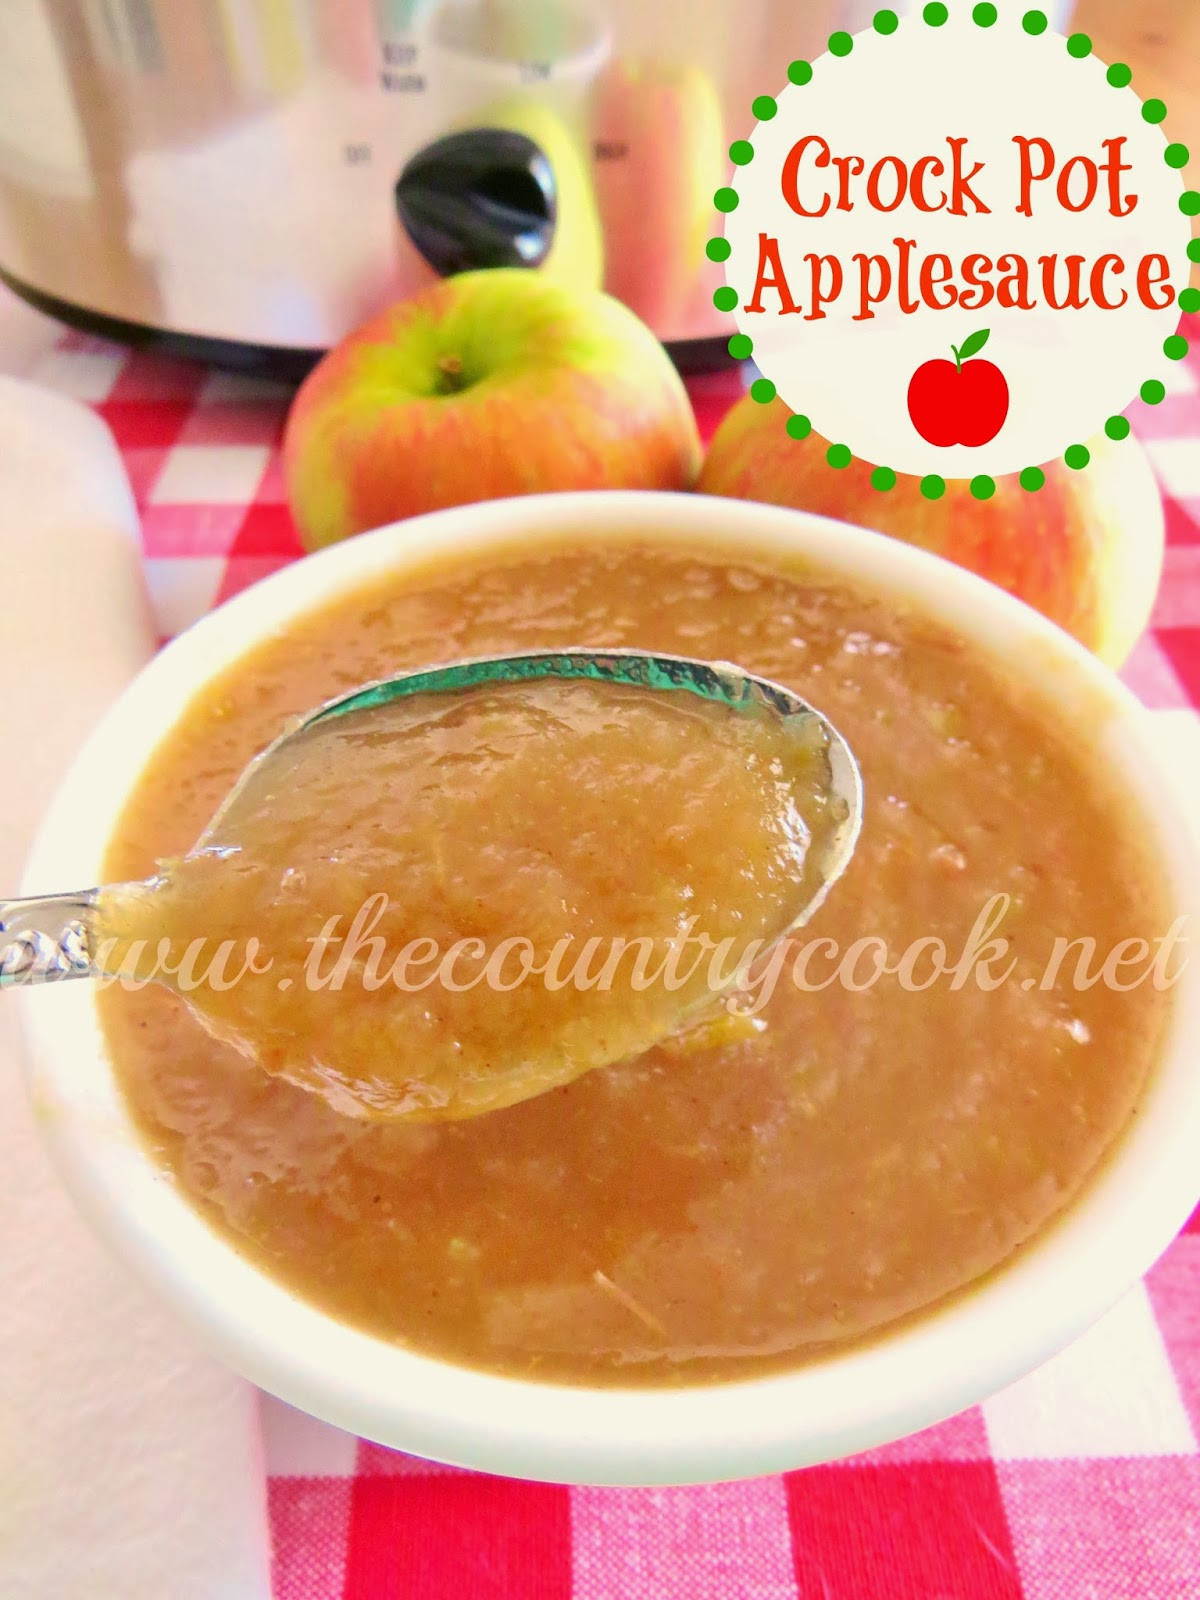 Applesauce Recipes Crockpot
 Crock Pot Applesauce The Country Cook